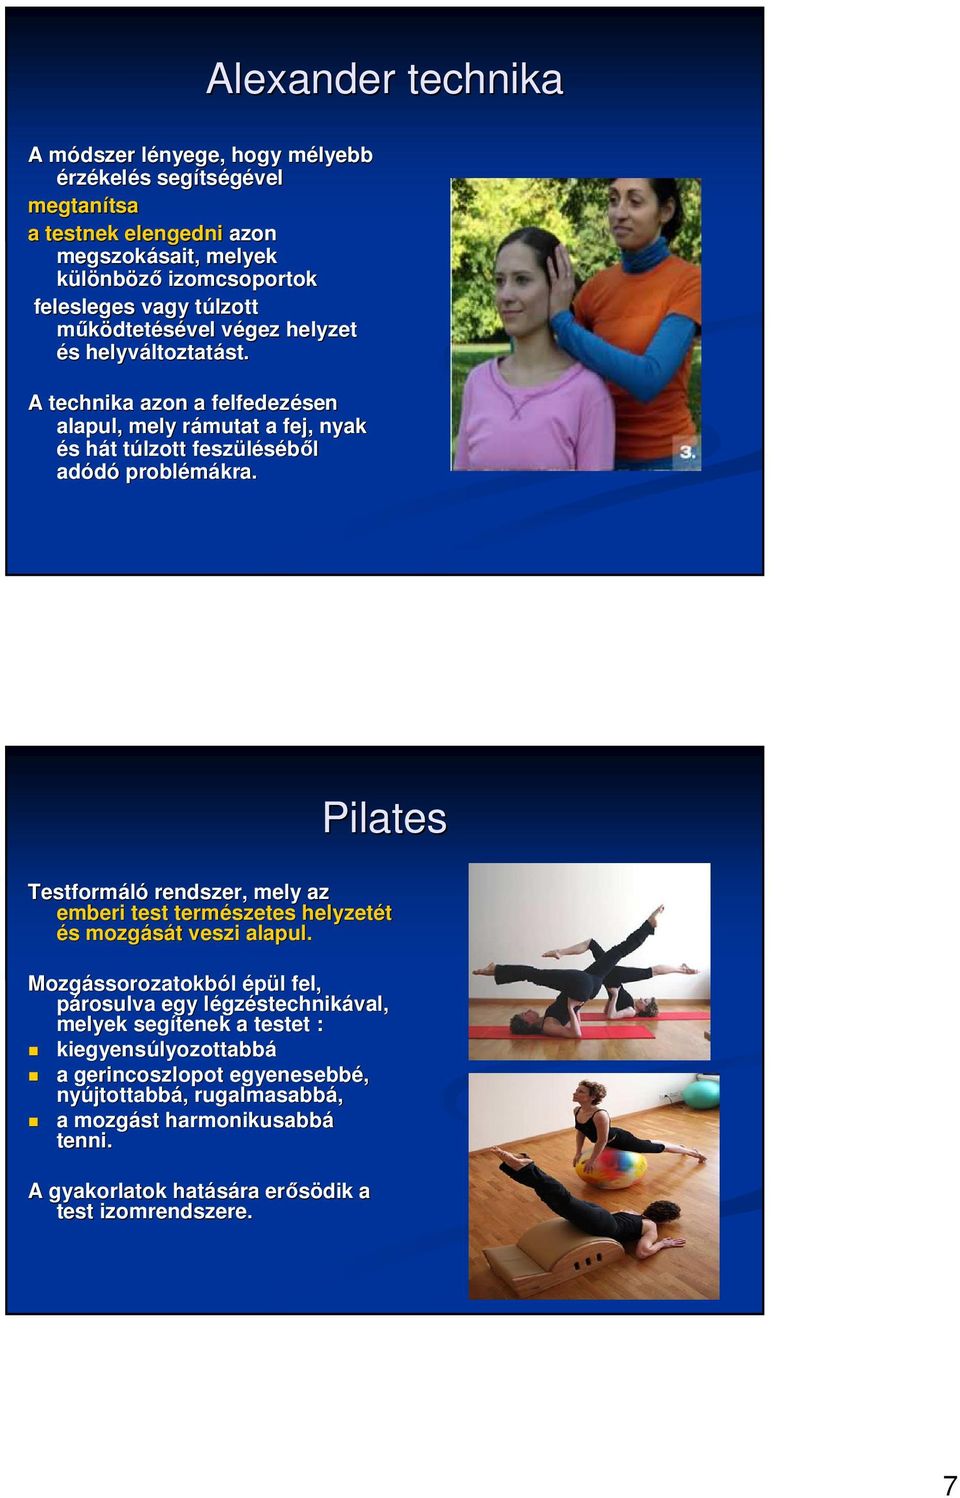 Pilates Testformáló rendszer, mely az emberi test természetes helyzetét és s mozgását t veszi alapul.